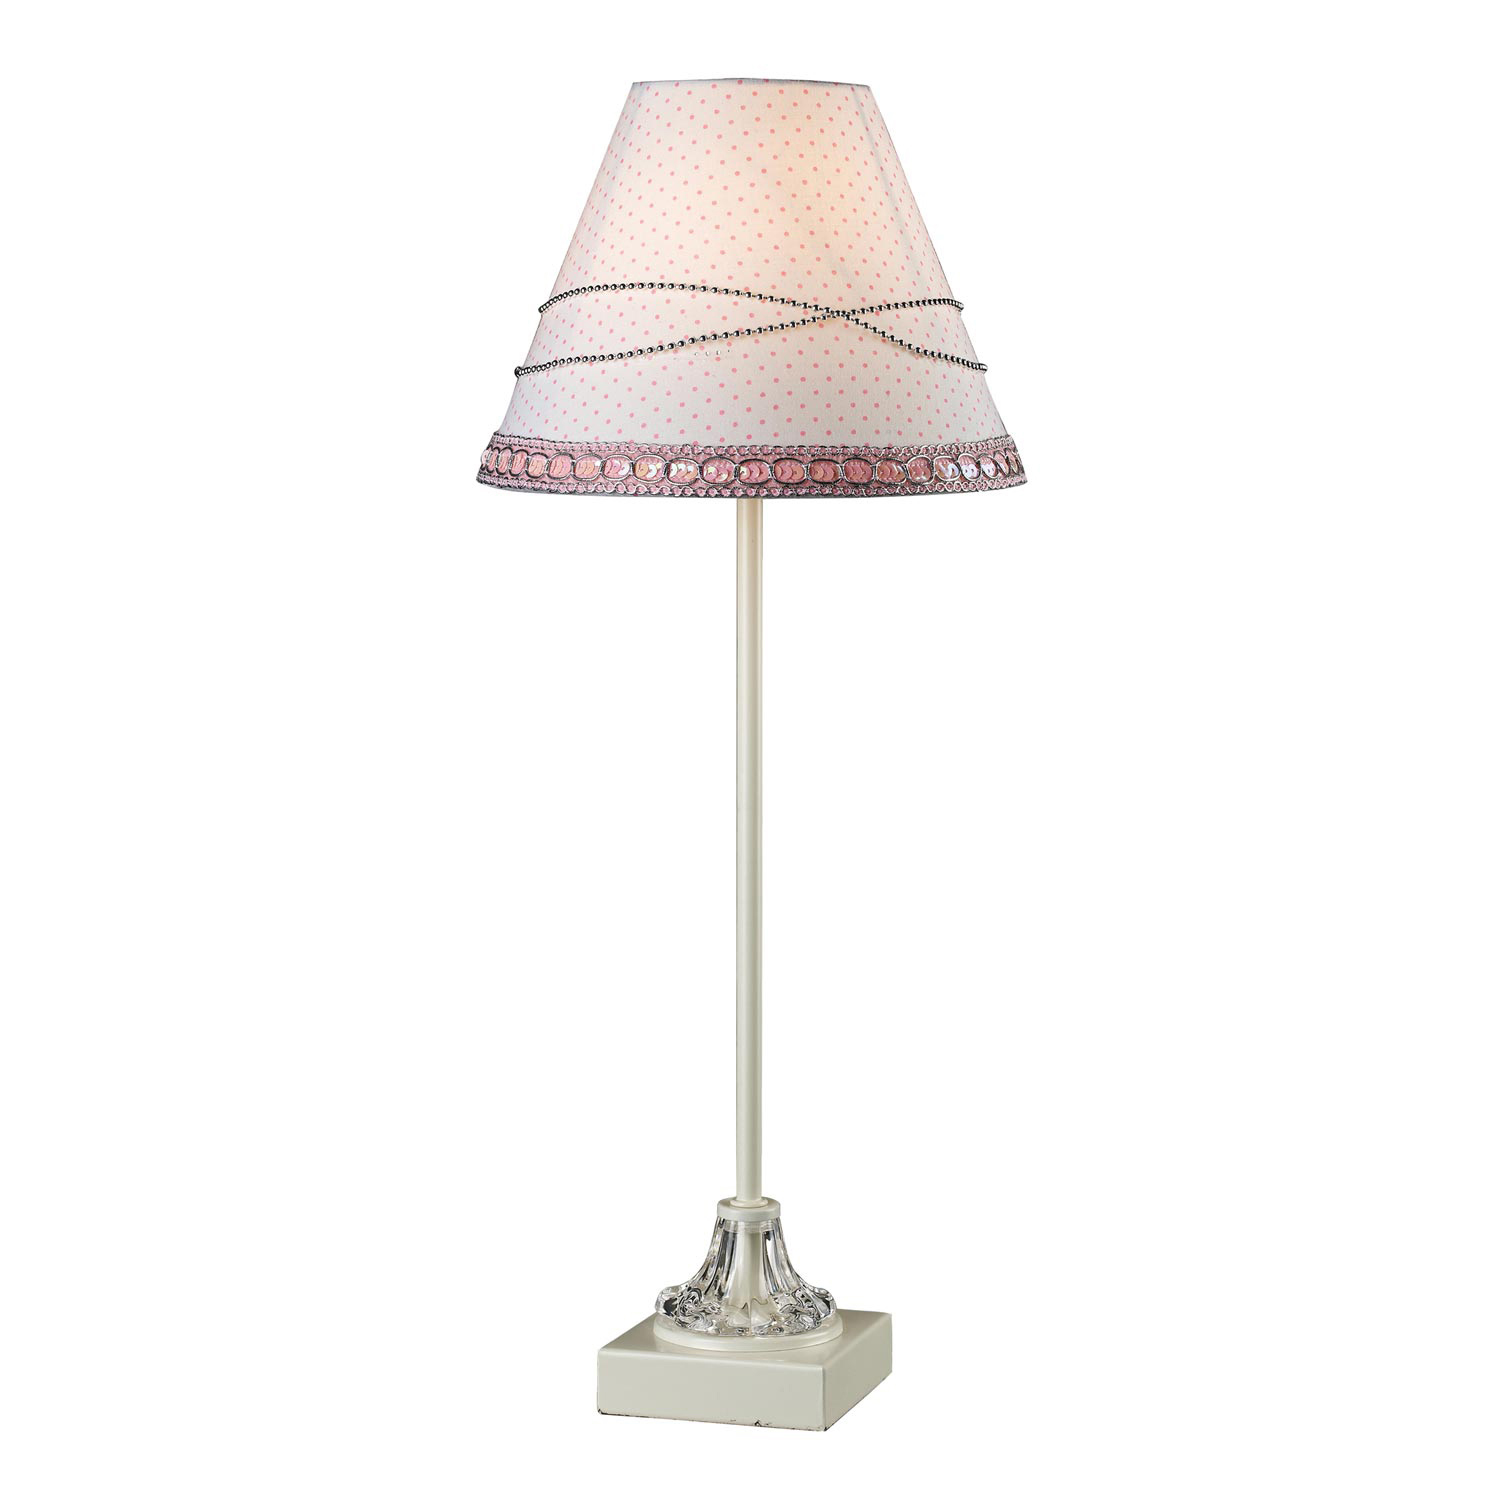 Elk Lighting 111-1110 Alice Table Lamp - Chrome